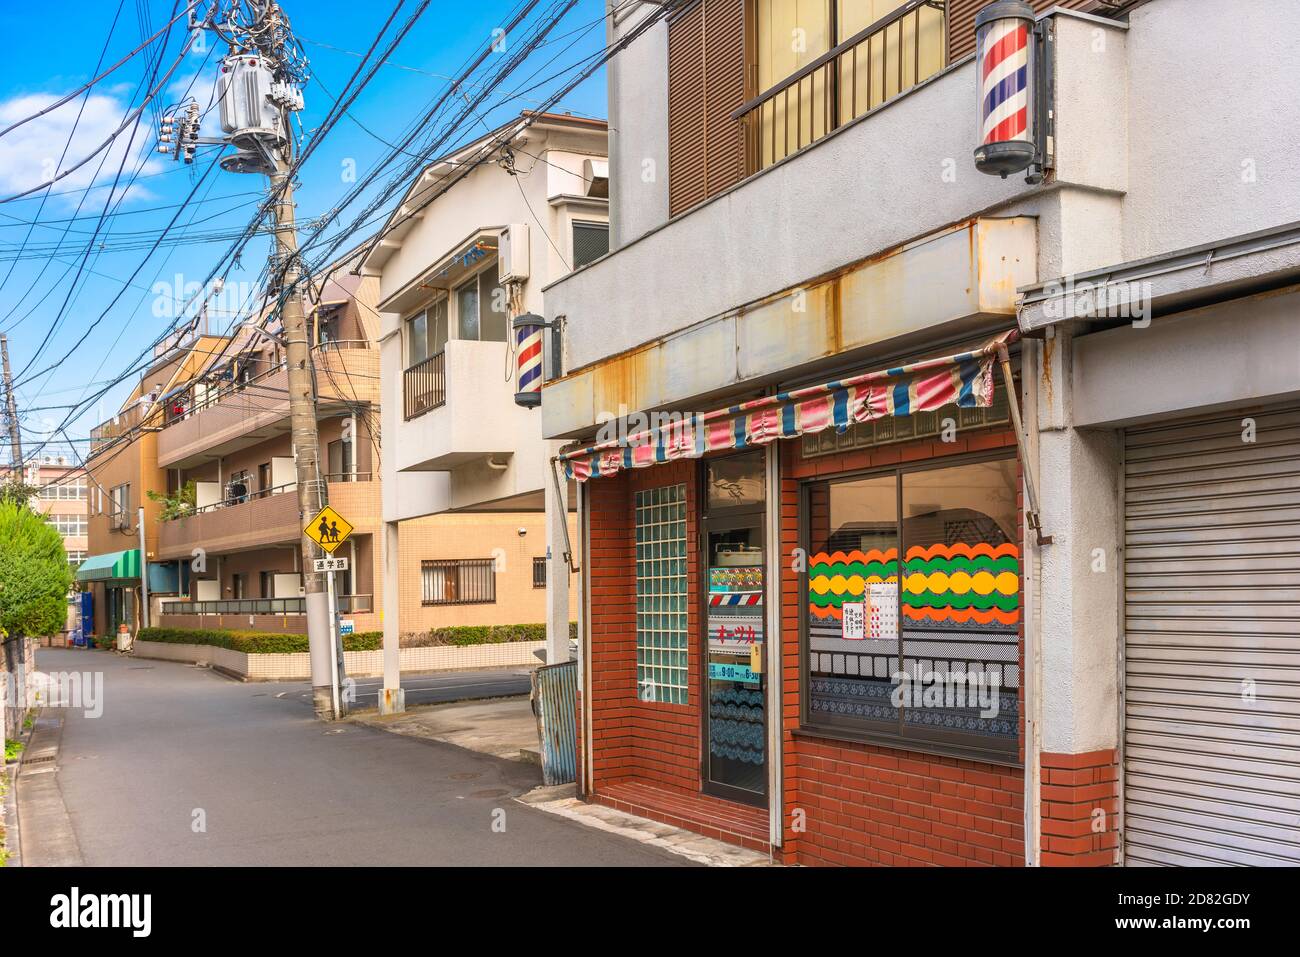 tokyo, giappone - ottobre 20 2020: Strada di quartiere del quartiere di Kanegafuchi con un cartello stradale di avvertimento per la zona della scuola e un arredamento per barbiere Foto Stock